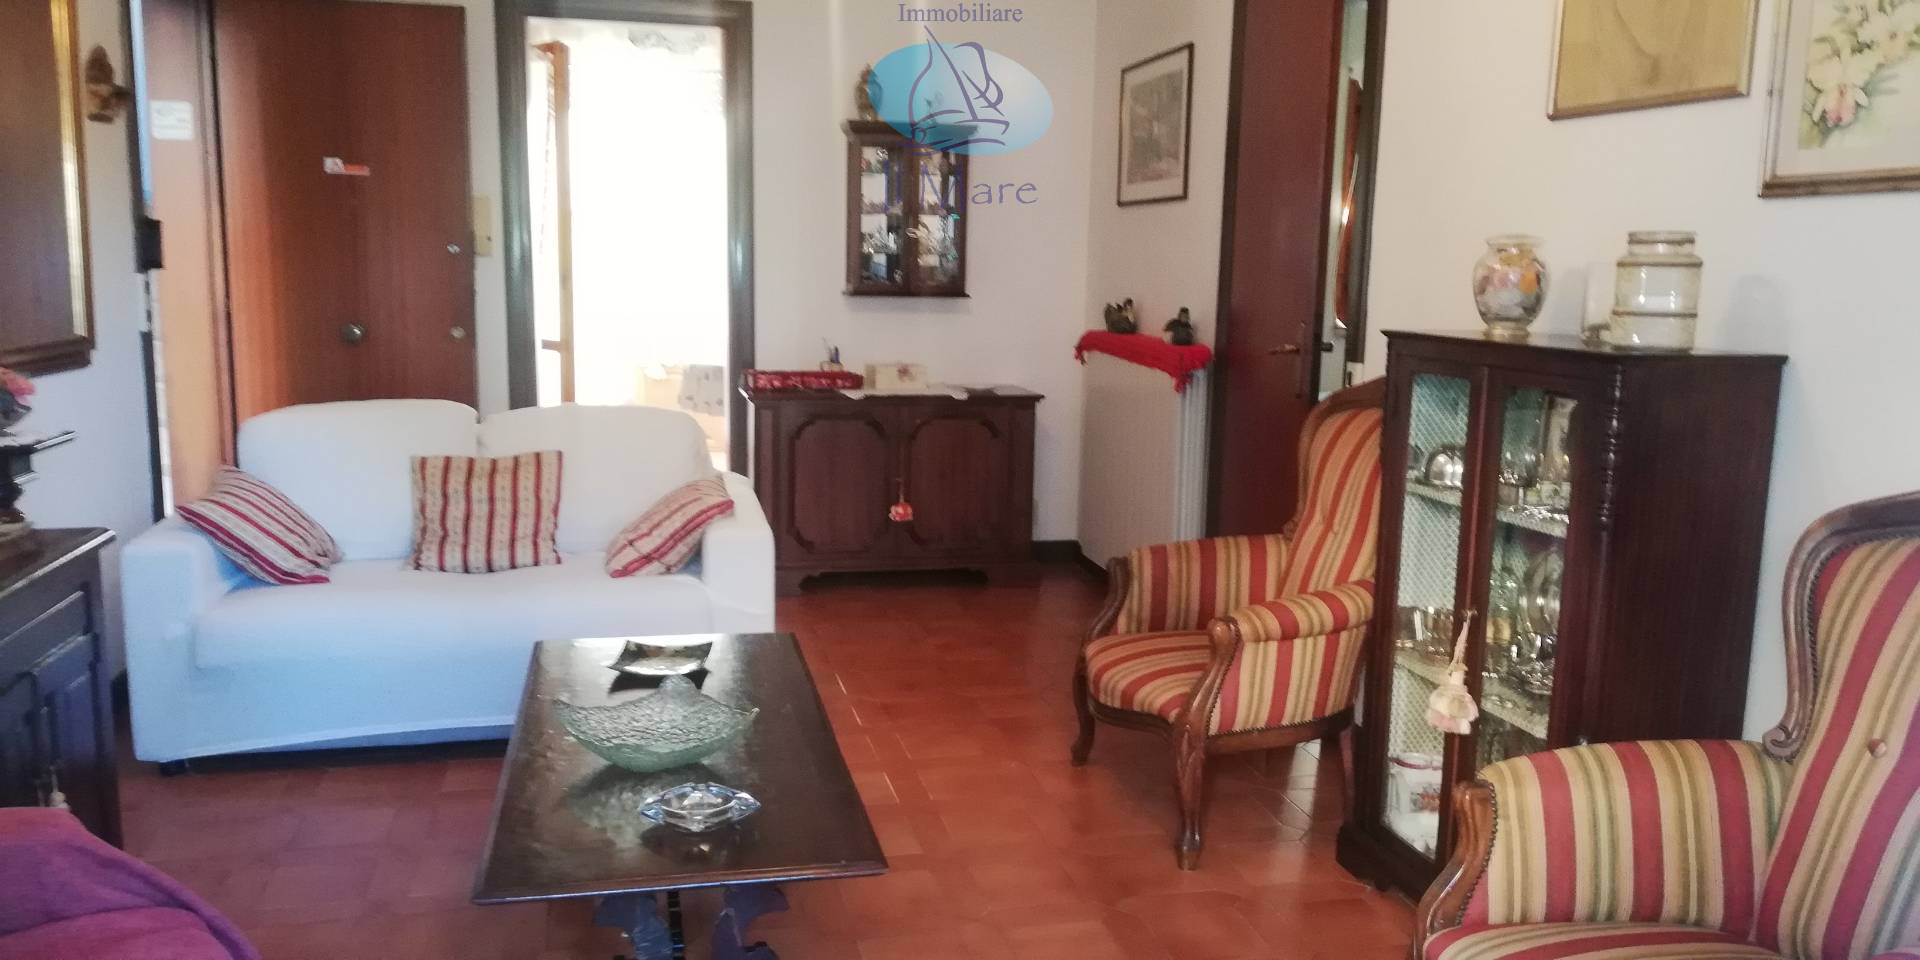 Appartamento in vendita a Camaiore, 3 locali, zona Località: LidodiCamaiore, prezzo € 220.000 | PortaleAgenzieImmobiliari.it